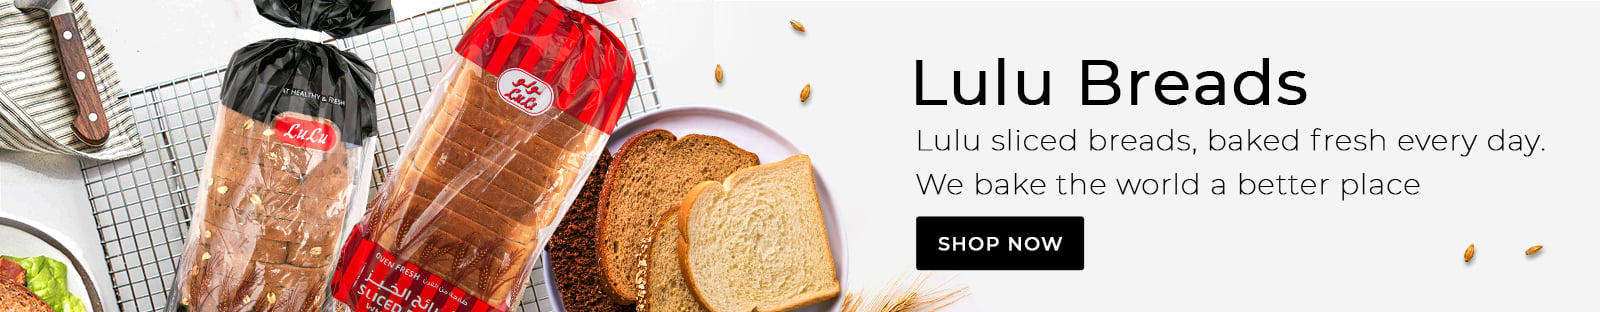 LuLu Bread